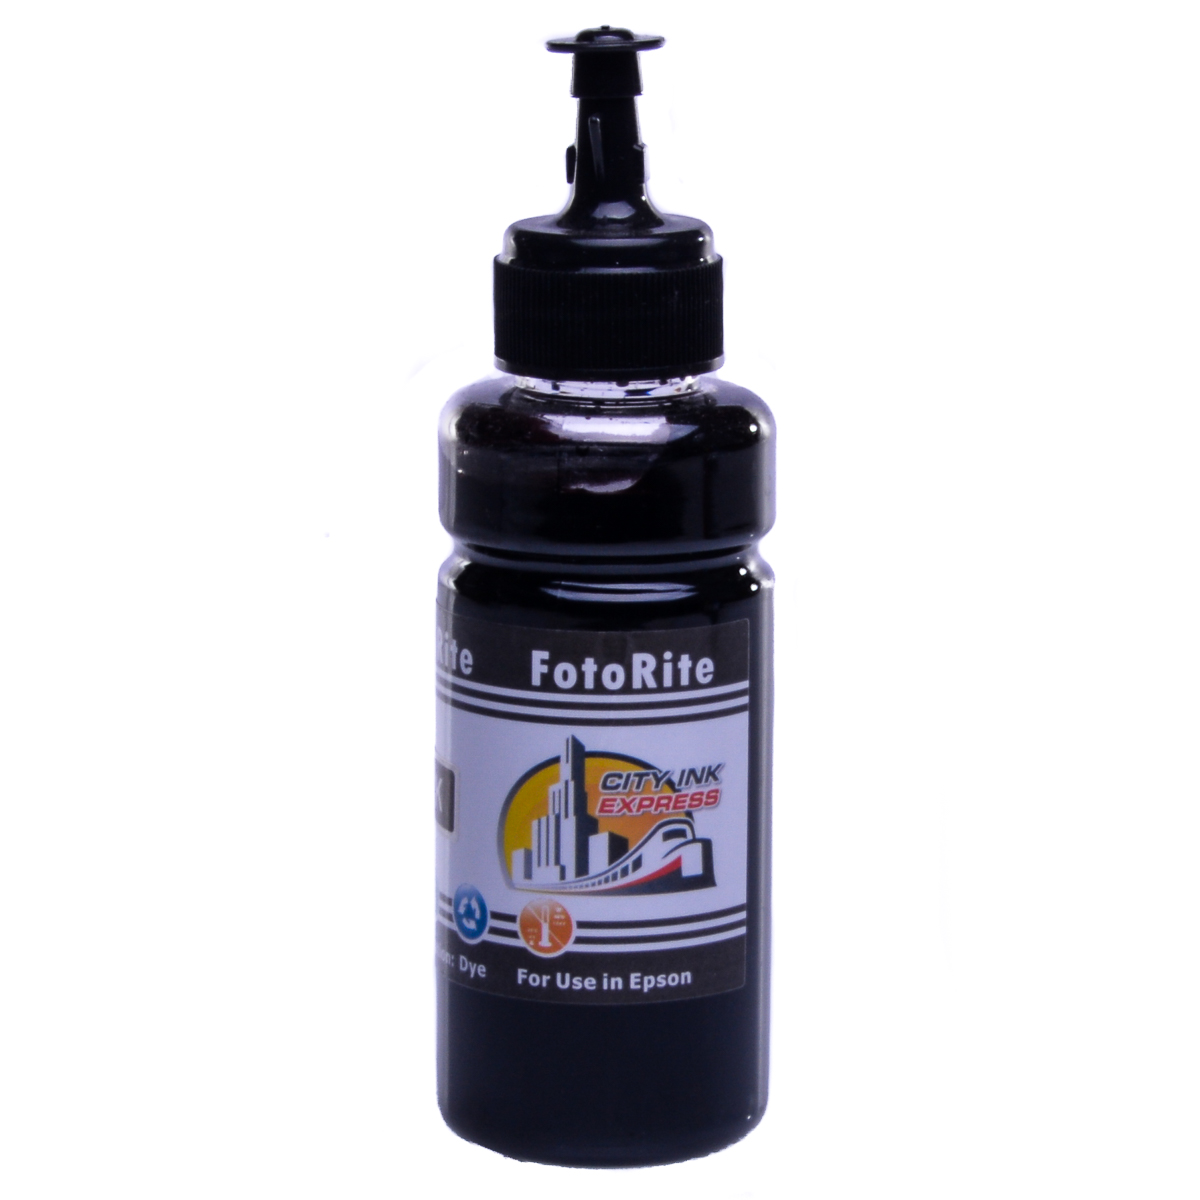 Cheap Black dye ink replaces Epson Stylus BX3450 - T0711